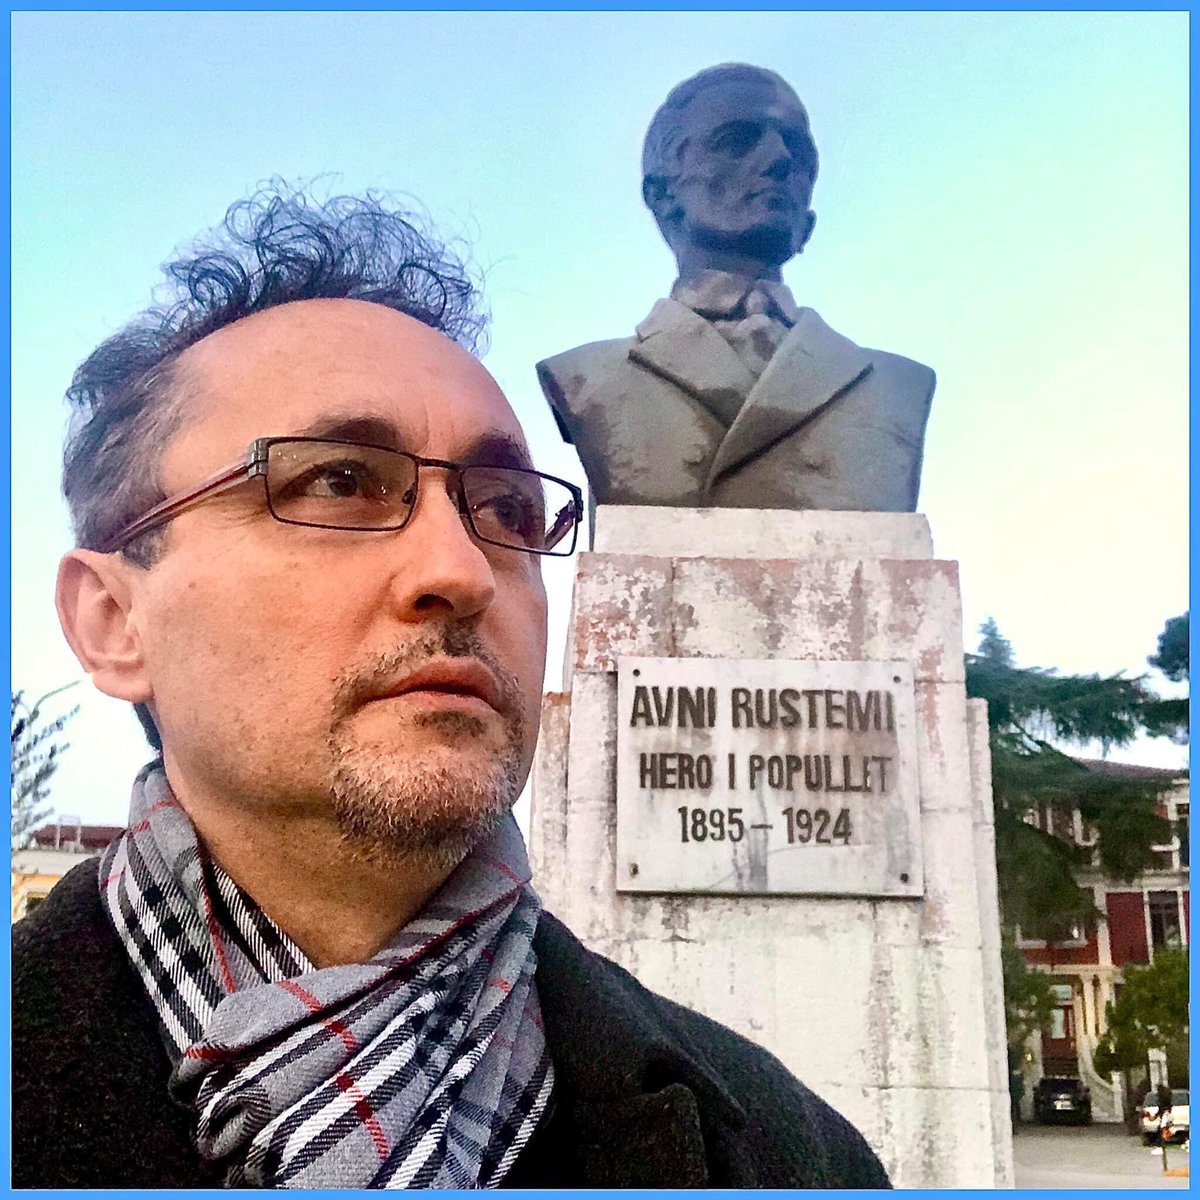 Më 22 shtator 1895, në Libohovë lindi Avni Rustemi, mësuesi, publicisti dhe deputeti shqiptar. Themelues dhe drejtues i shoqërisë 'Bashkimi' dhe anëtar i opozitës demokratike i zgjedhur deputet në dhjetorin e vitit 1923.